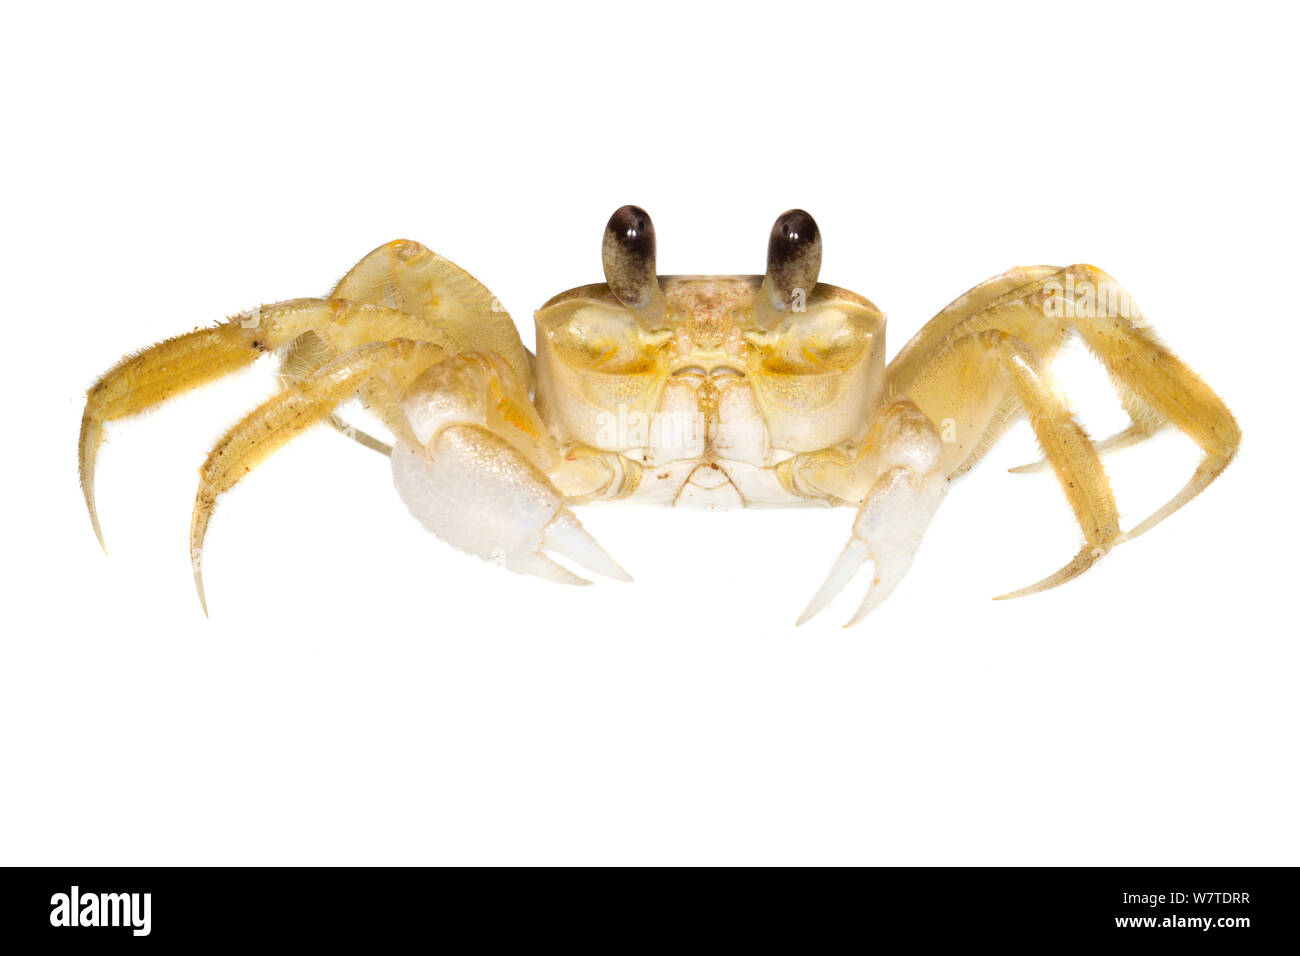 Le crabe fantôme non identifiés Escudo de Veraguas, Panama. Projet d'Meetyourneighbors.net Banque D'Images